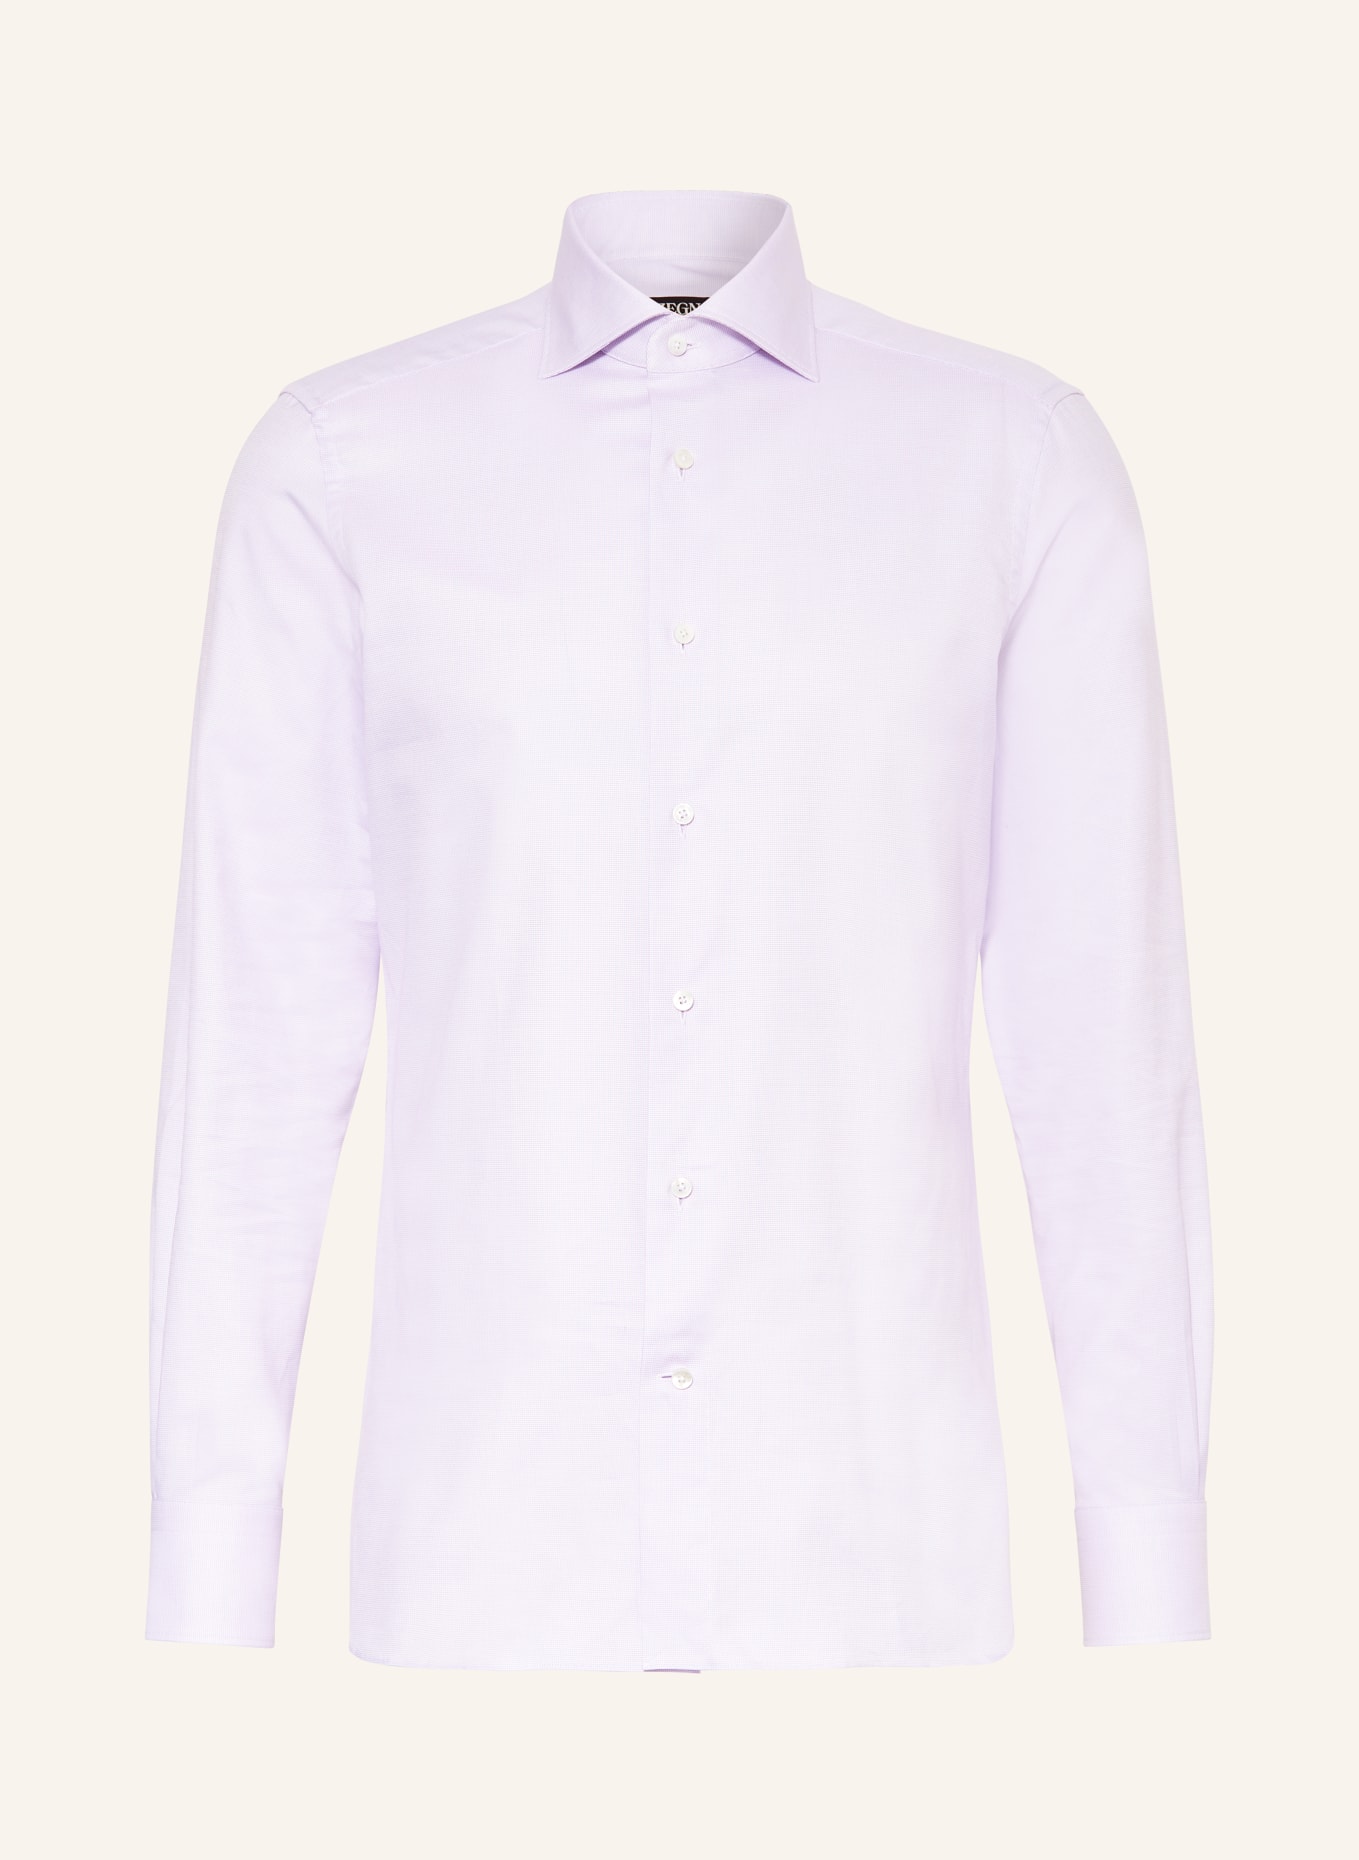 ZEGNA Shirt regular fit, Color: ROSE (Image 1)